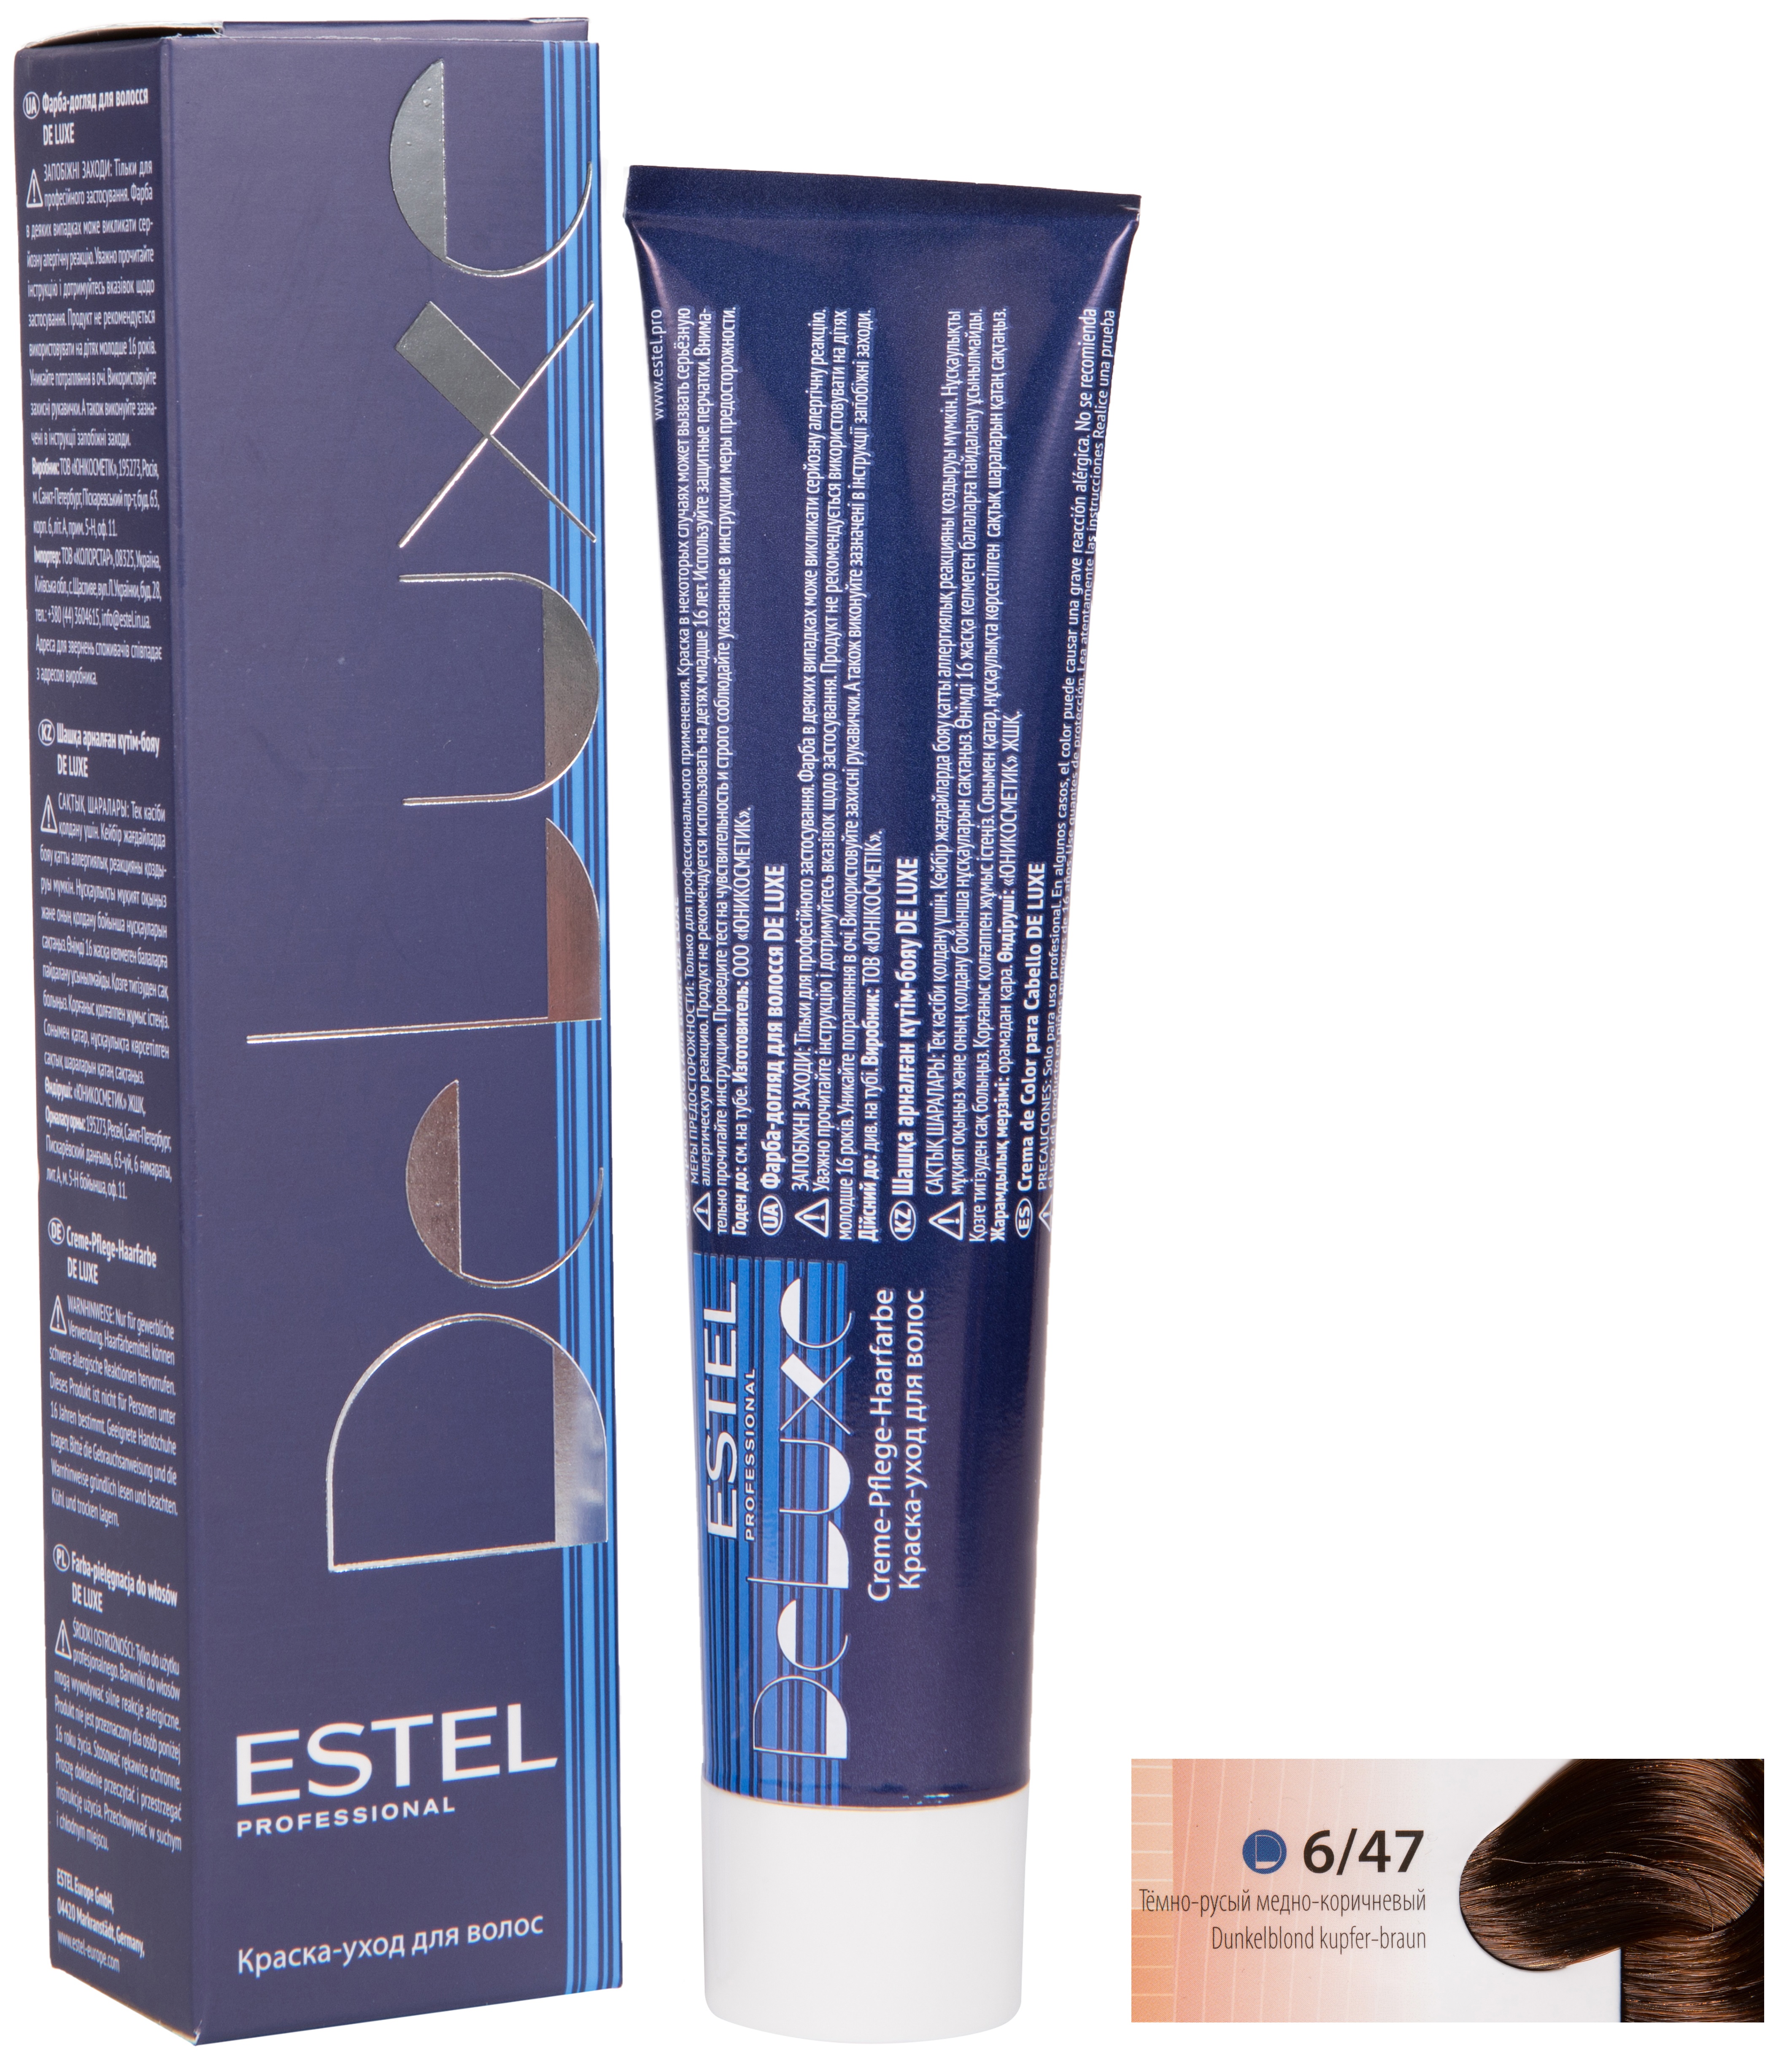 Краска для волос ESTEL PROFESSIONAL 6/47 DE LUXE краска-уход для окрашивания волос, темно-русый медно-коричневый 60 мл Бренд